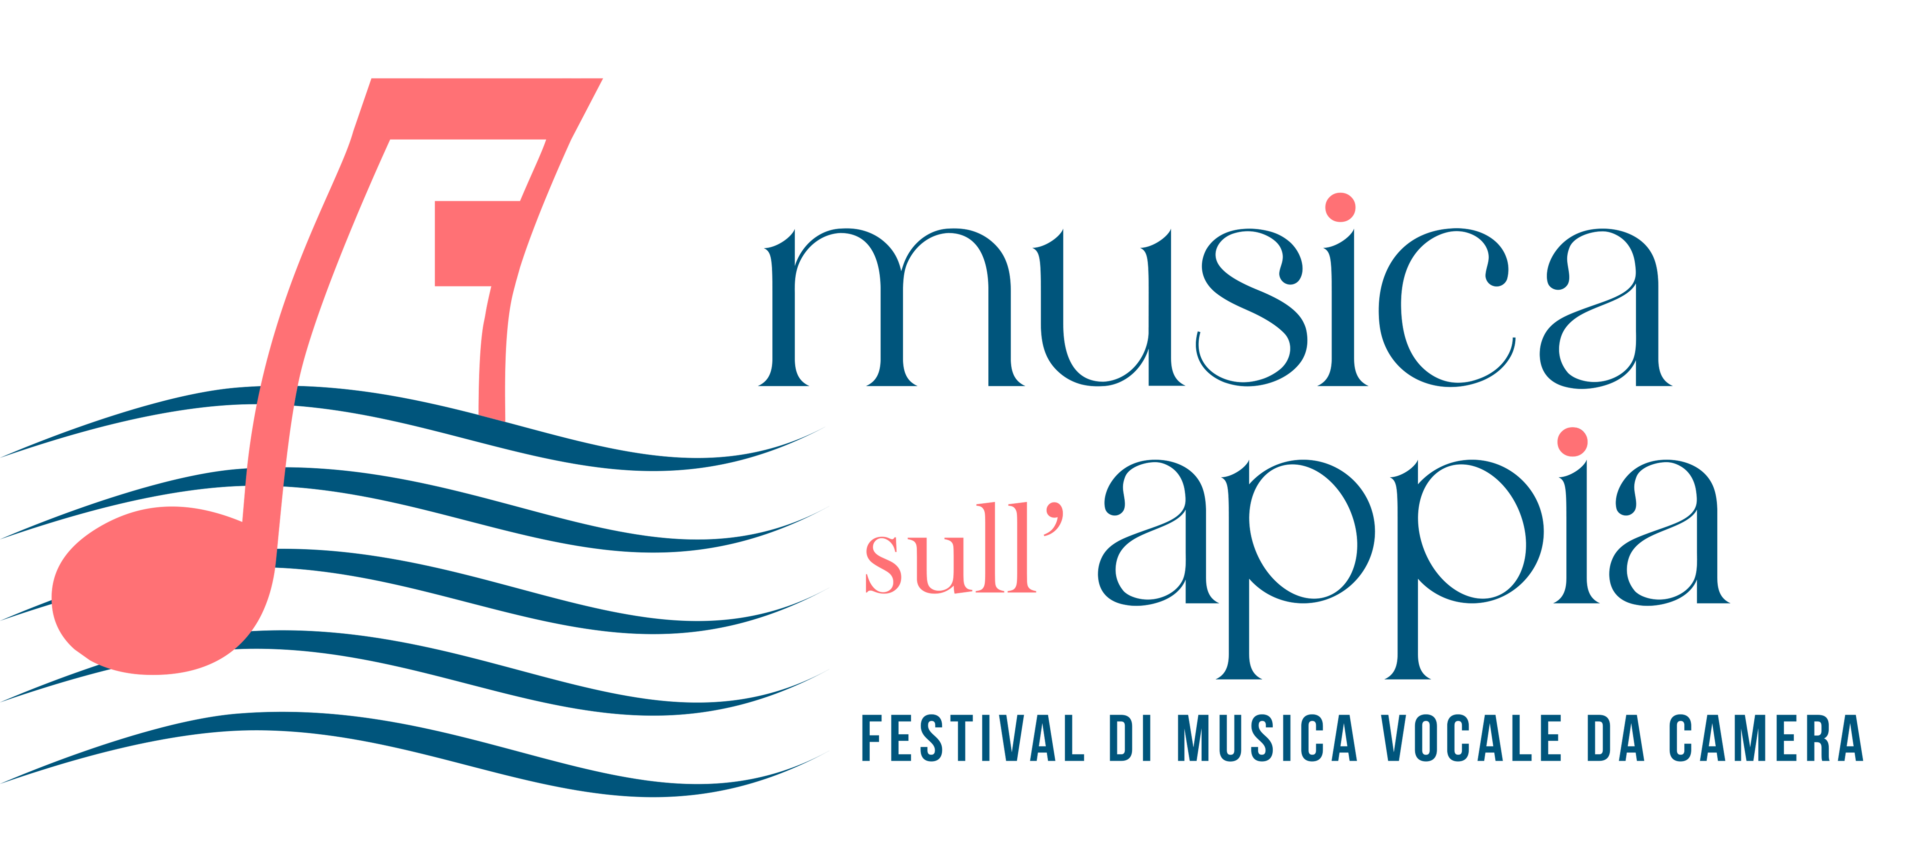 Musica sull' Appia